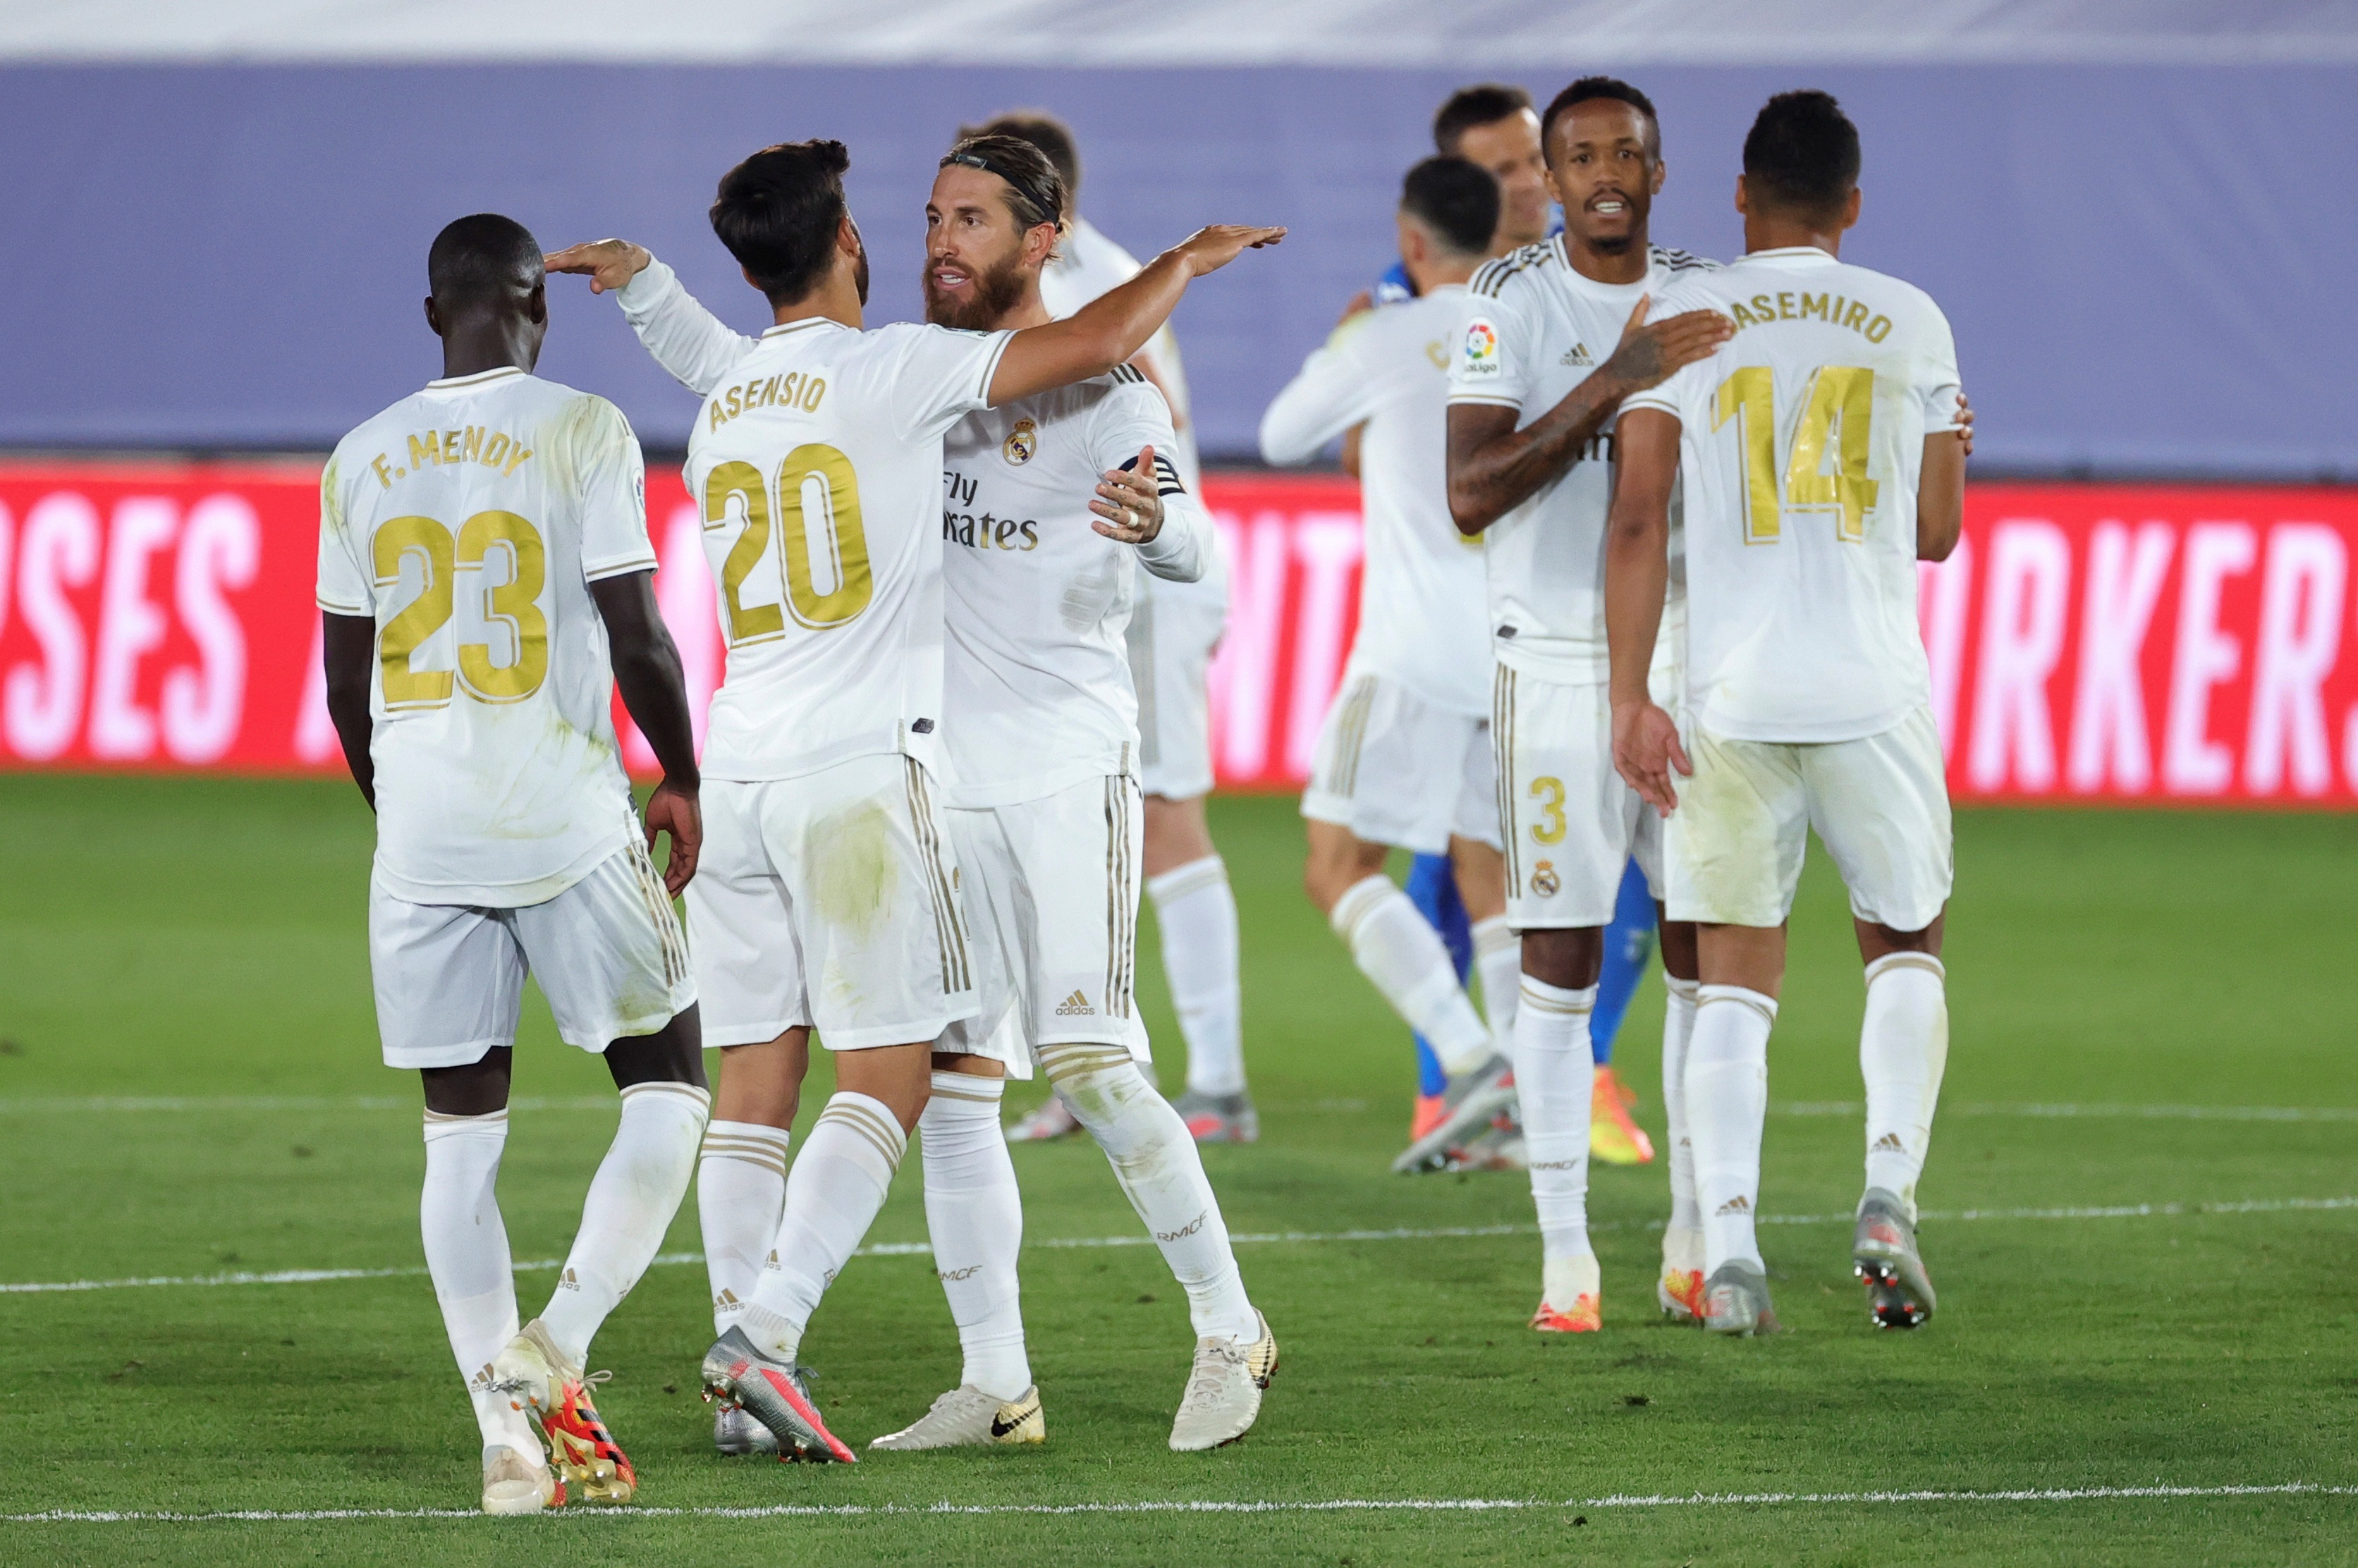 El Real Madrid dio un gran paso hacia el título tras sufrida victoria ante Getafe